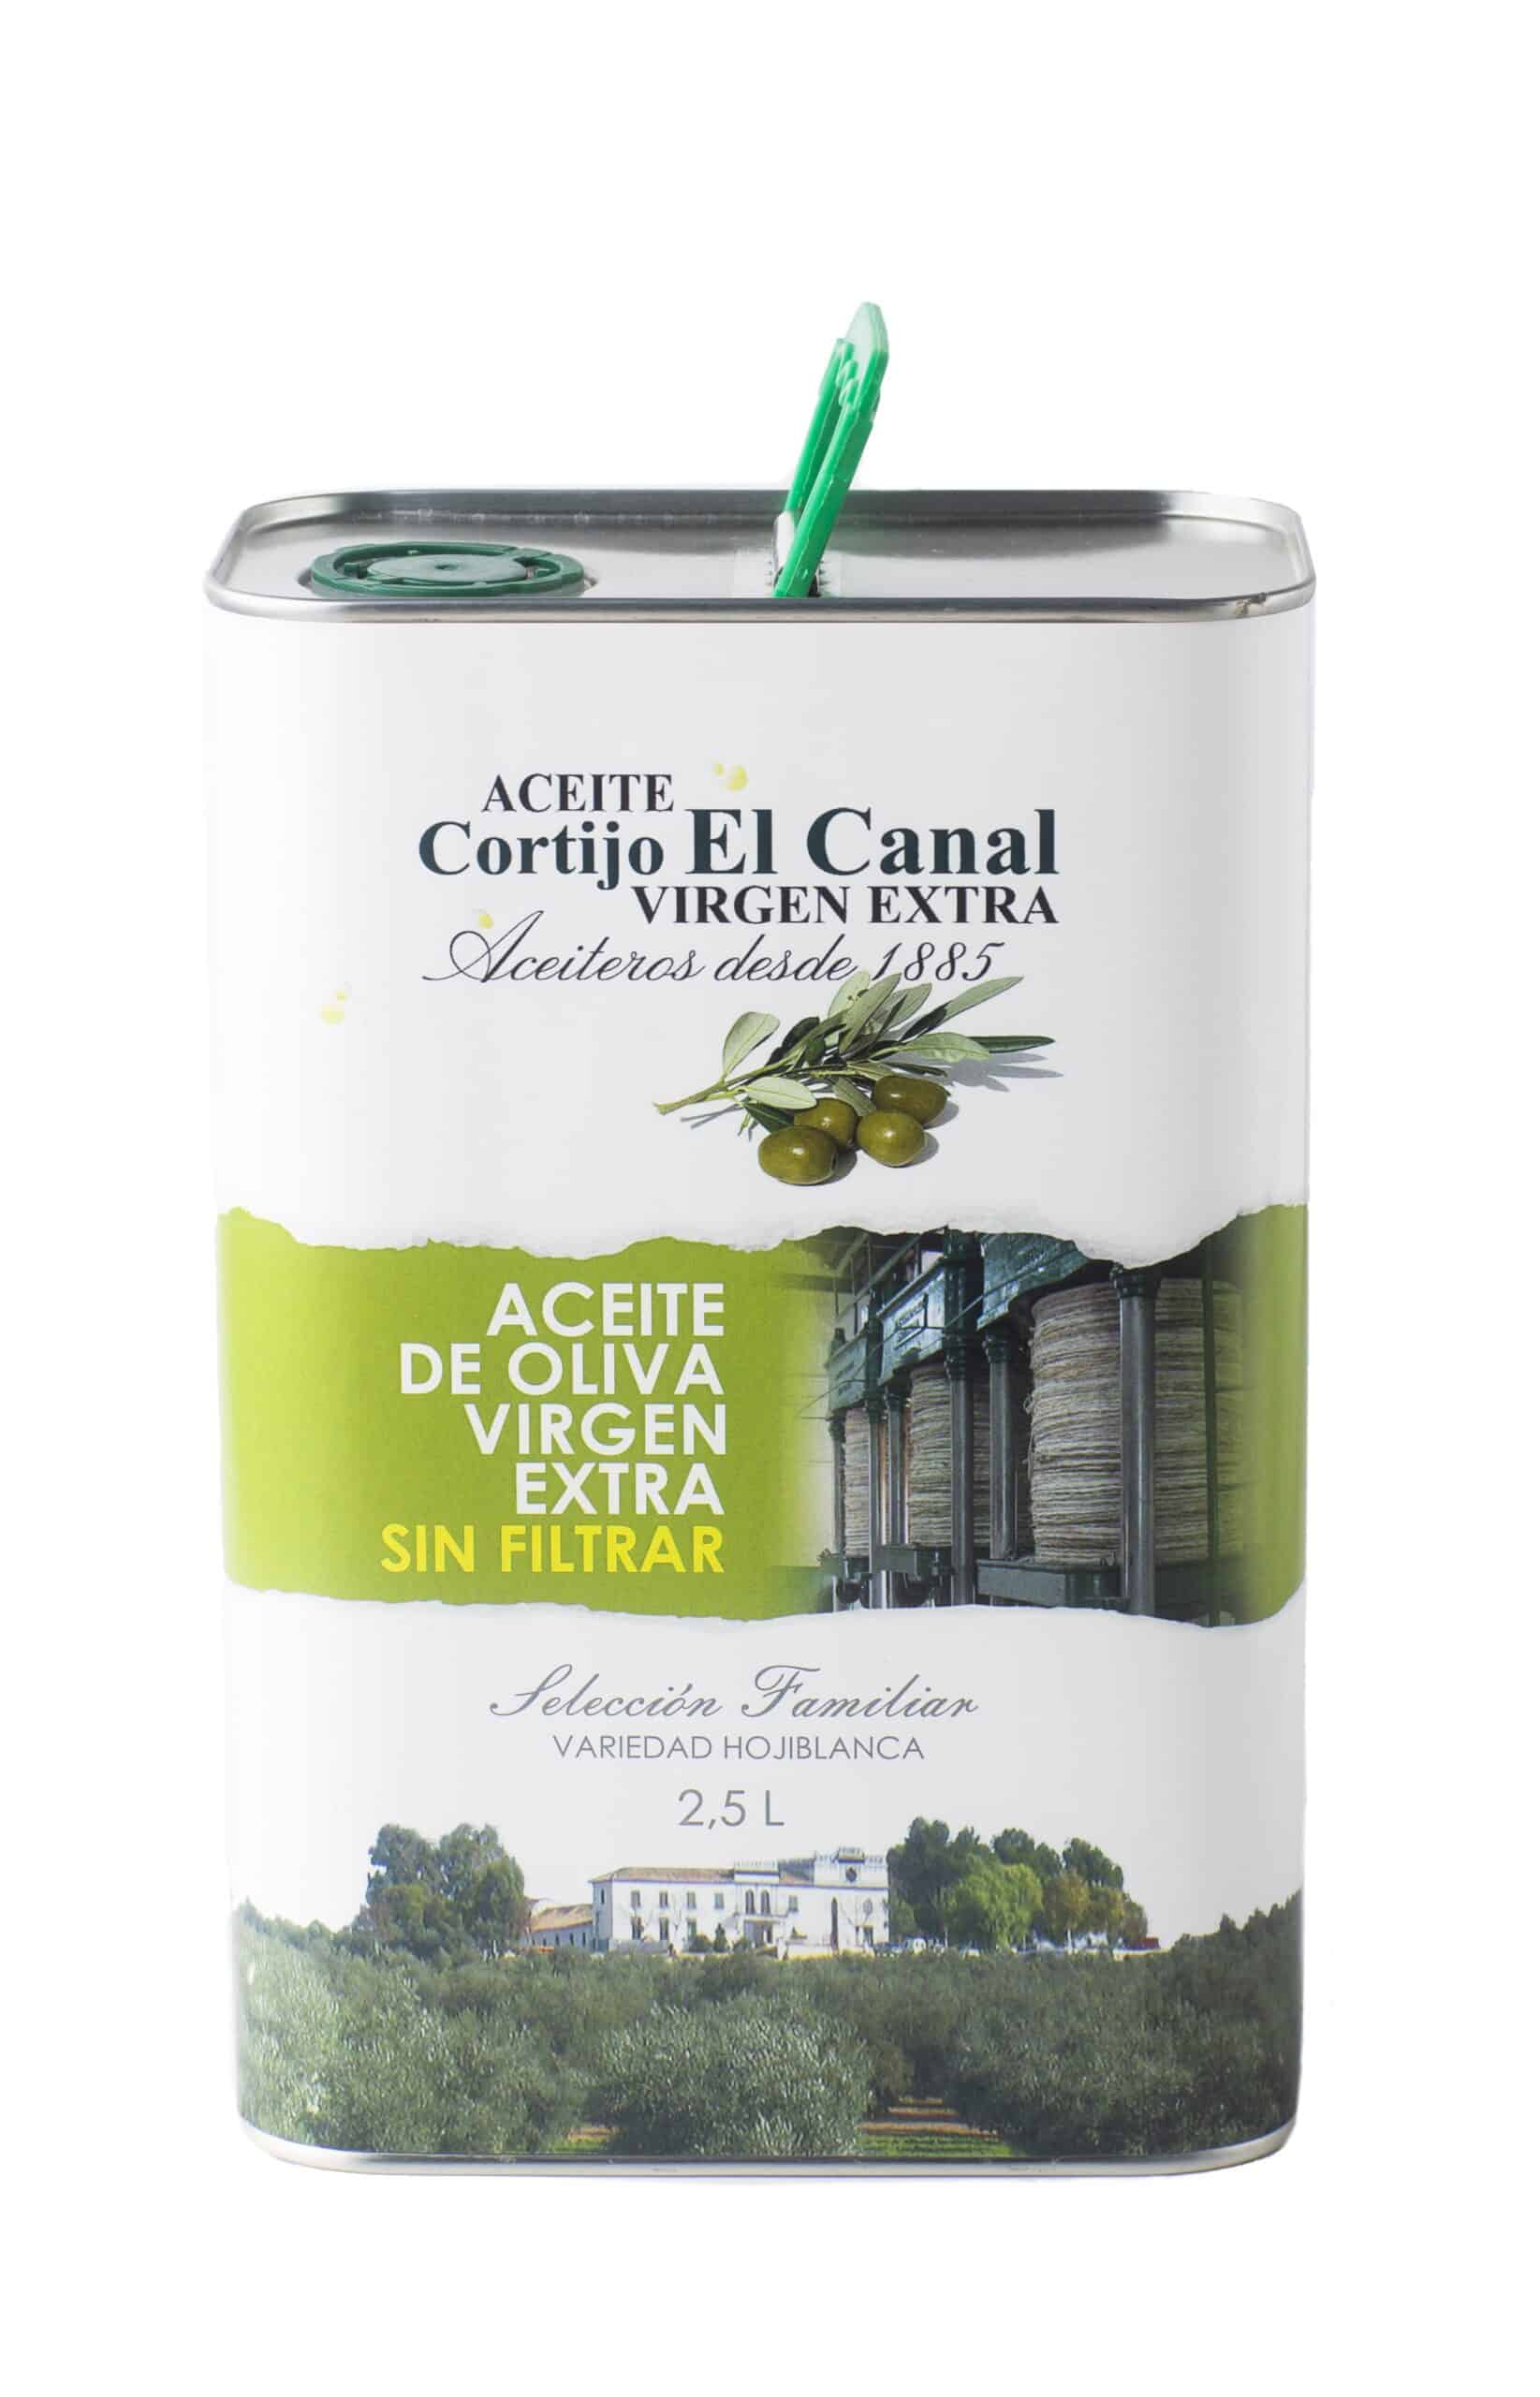 Sencillez Mucho Manifiesto Aceite de Oliva Virgen Extra Cortijo el Canal Lata 2,5L